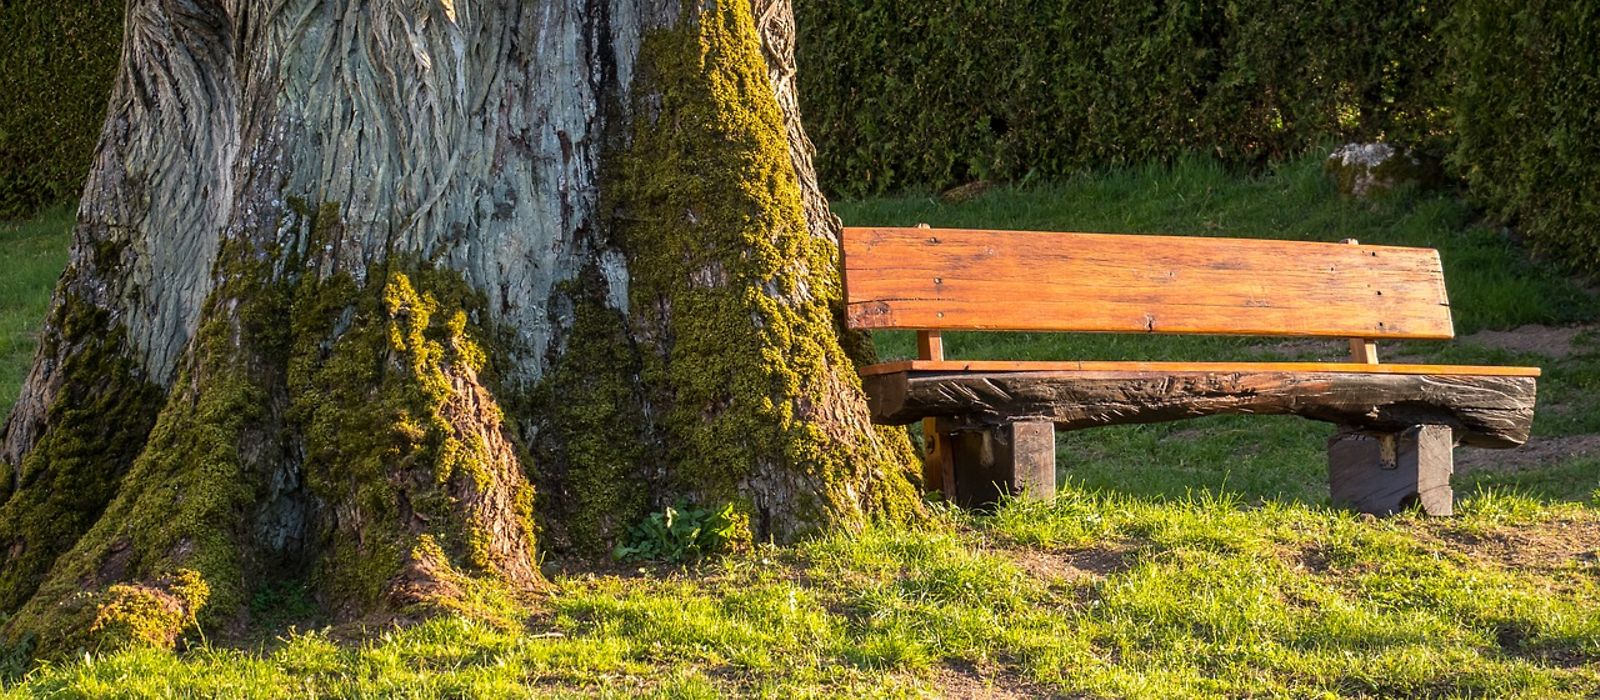 Dicker Baum, daneben eine Holzbank in der Abendsonne